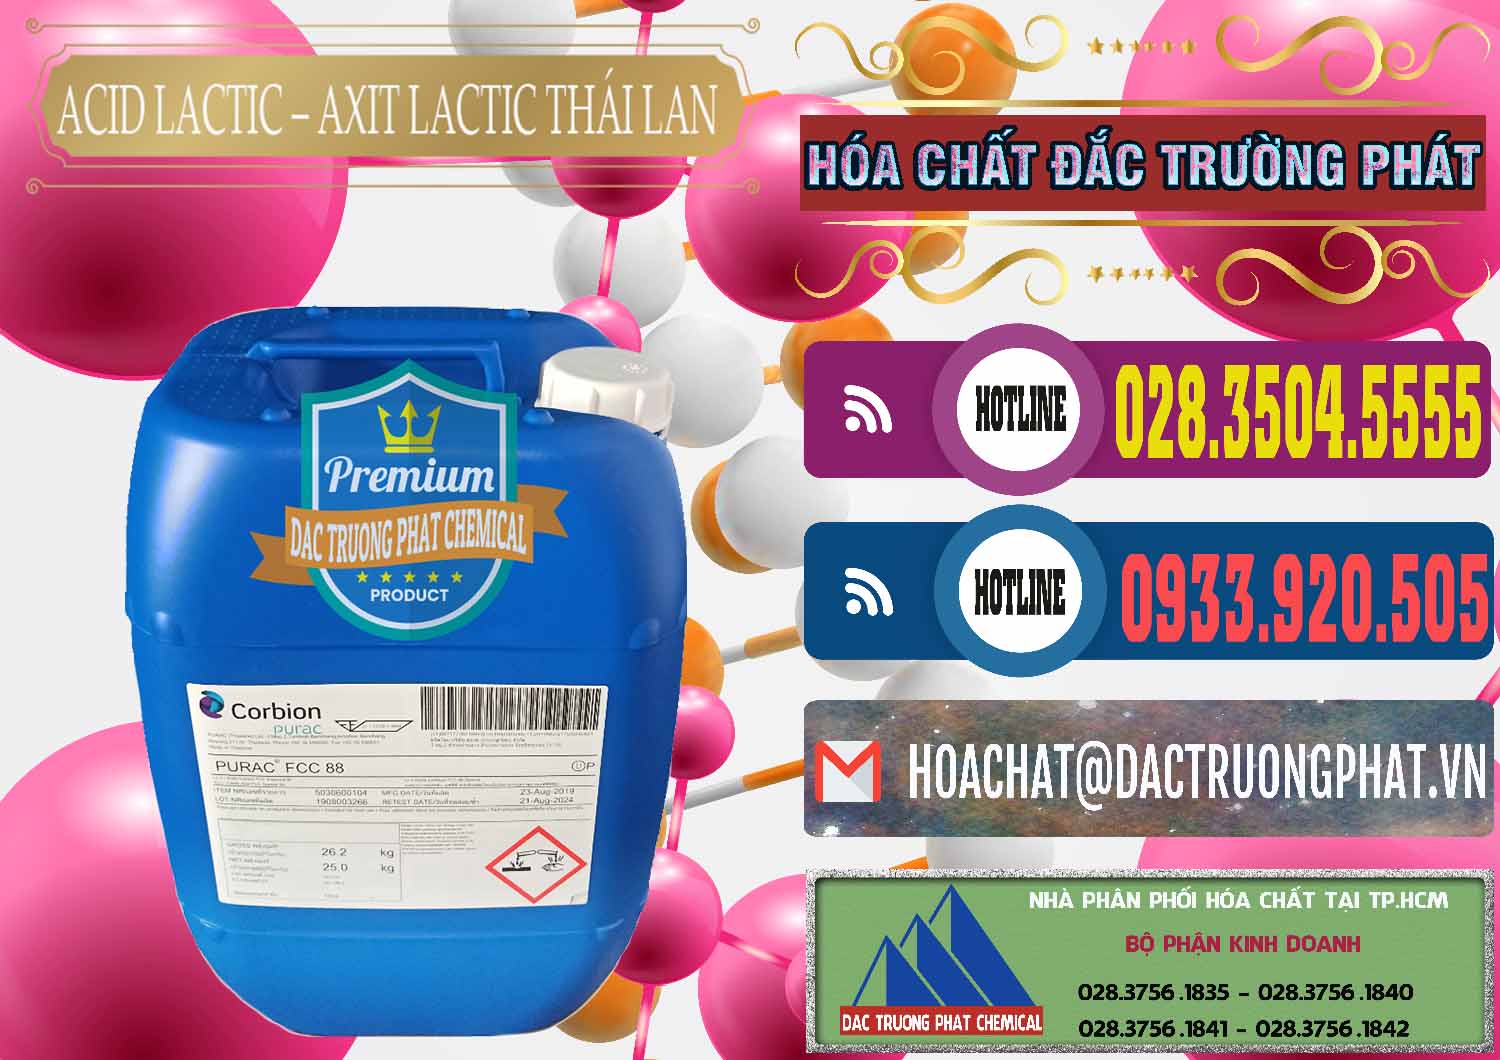 Cty bán & cung ứng Acid Lactic – Axit Lactic Thái Lan Purac FCC 88 - 0012 - Nơi chuyên phân phối _ kinh doanh hóa chất tại TP.HCM - muabanhoachat.com.vn